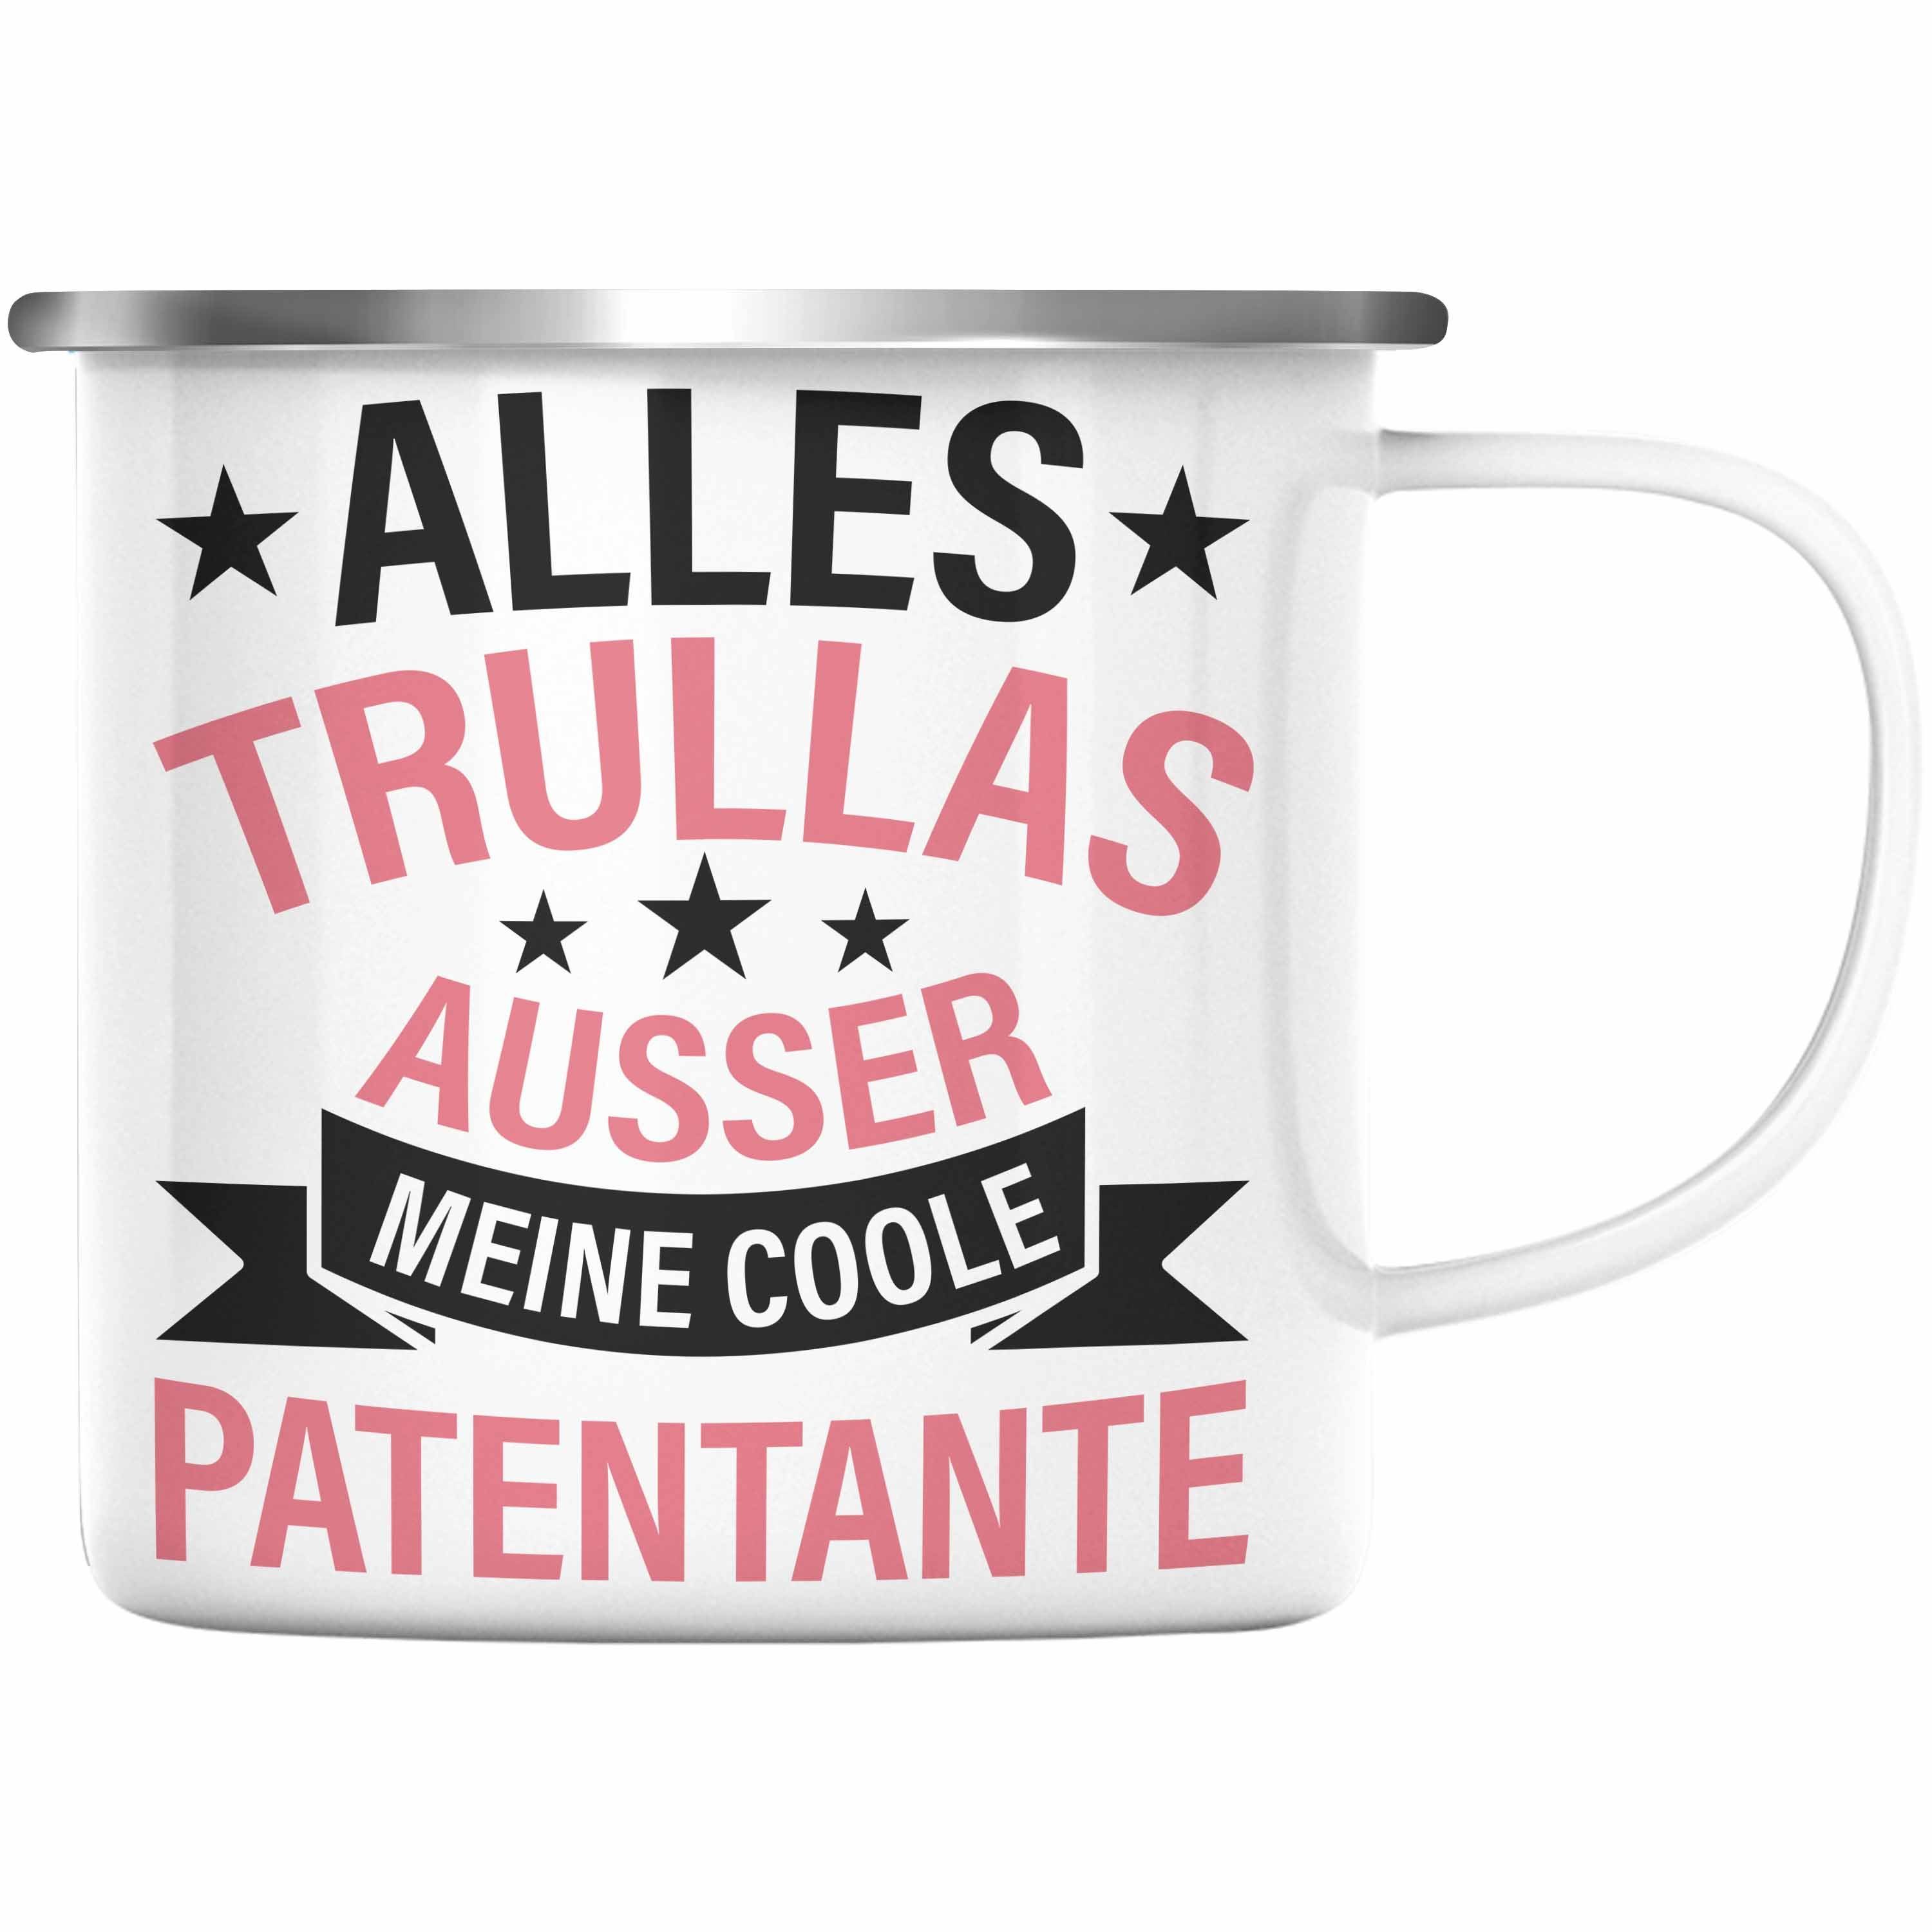 Alles Geburtstag Trullas Trendation Emaille Lustig Geschenkidee - Tasse Silber Thermotasse Geschenk Trendation Patentante